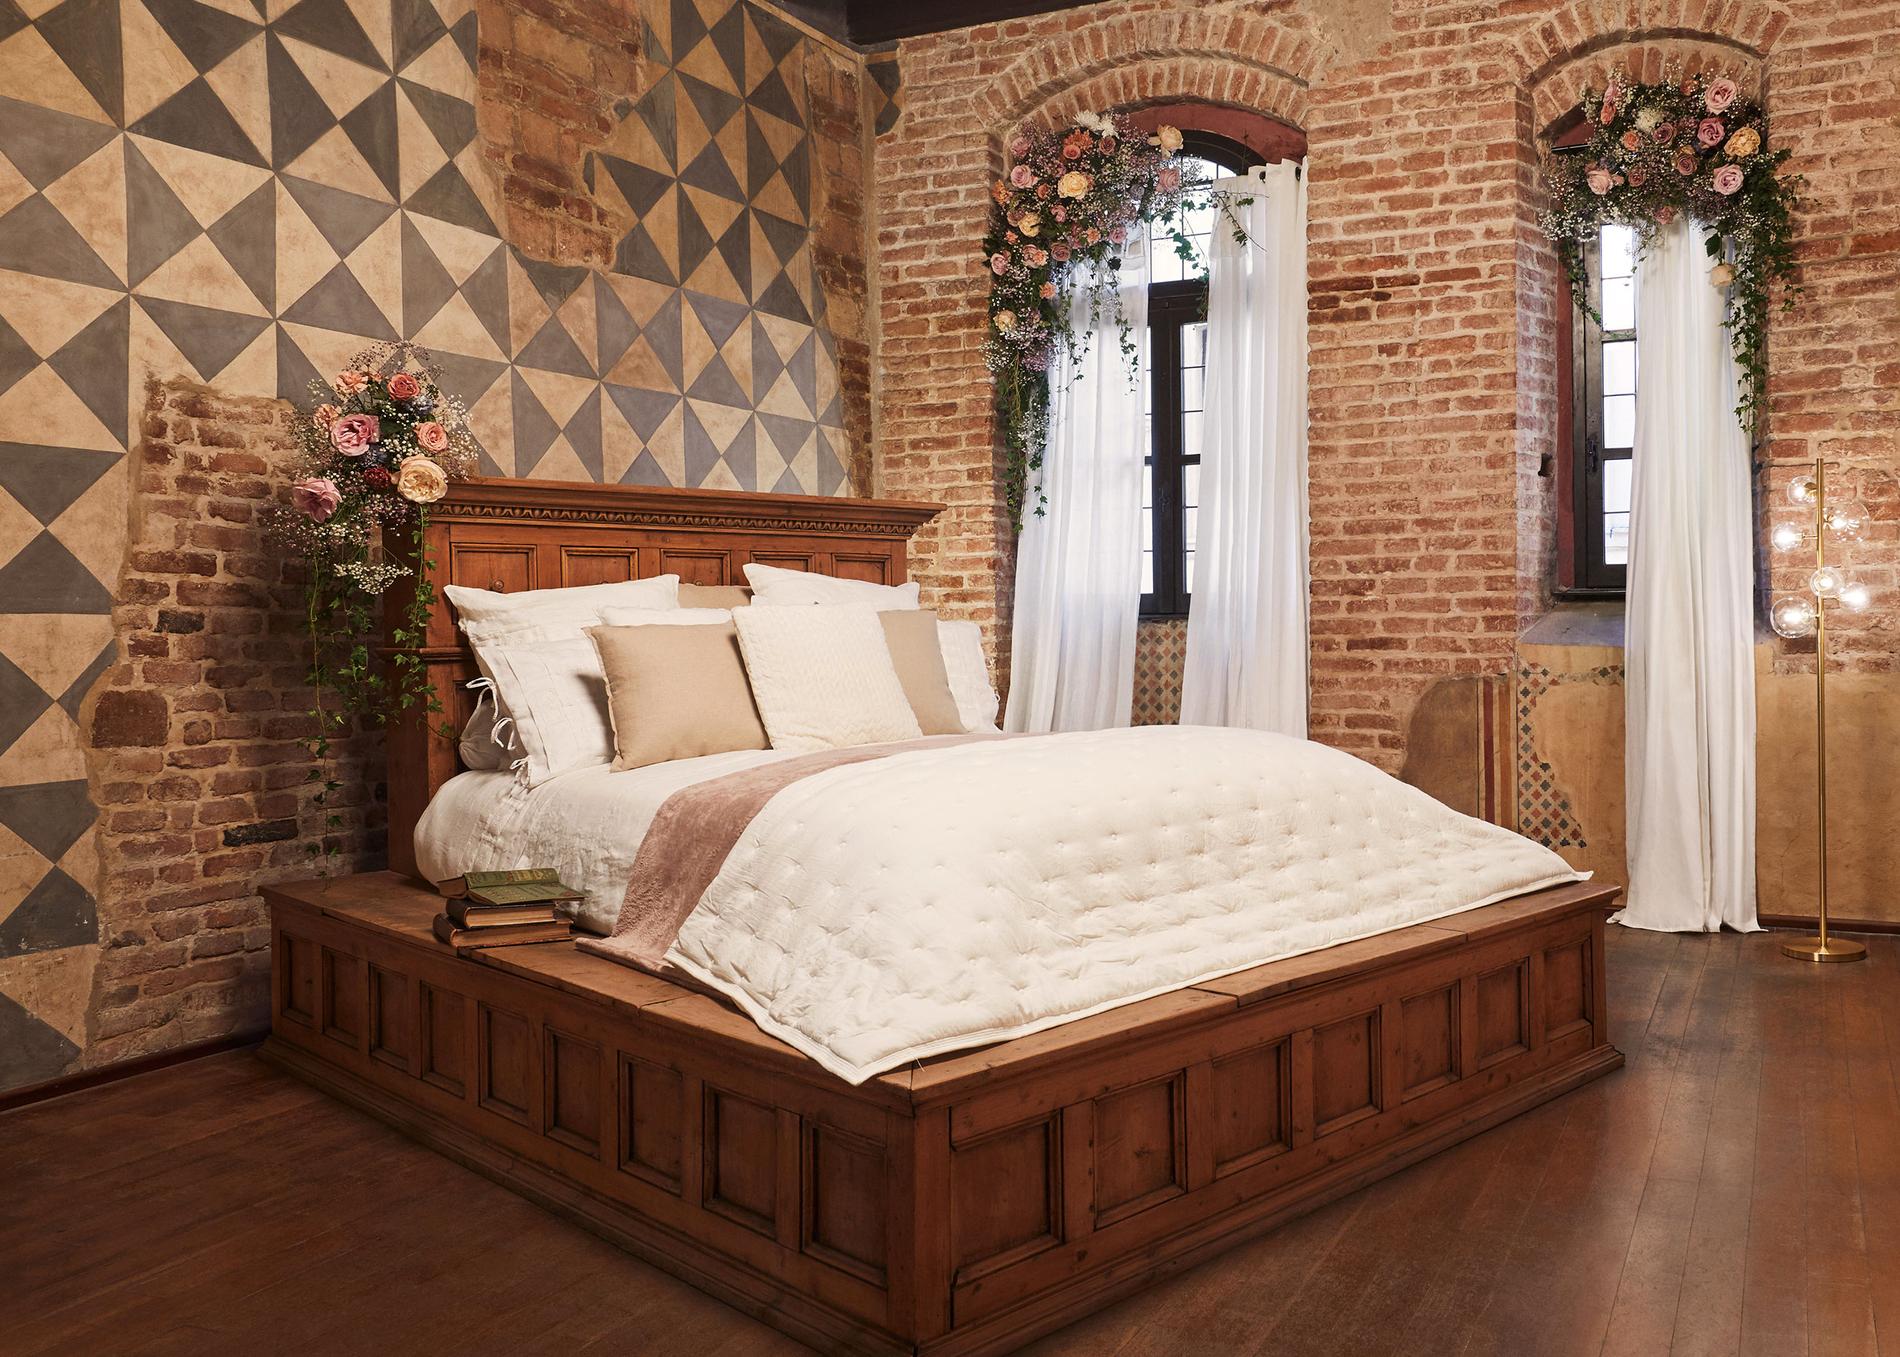 Denna säng har varit med i en av filmatiseringarna av ”Romeo och Julia”. 